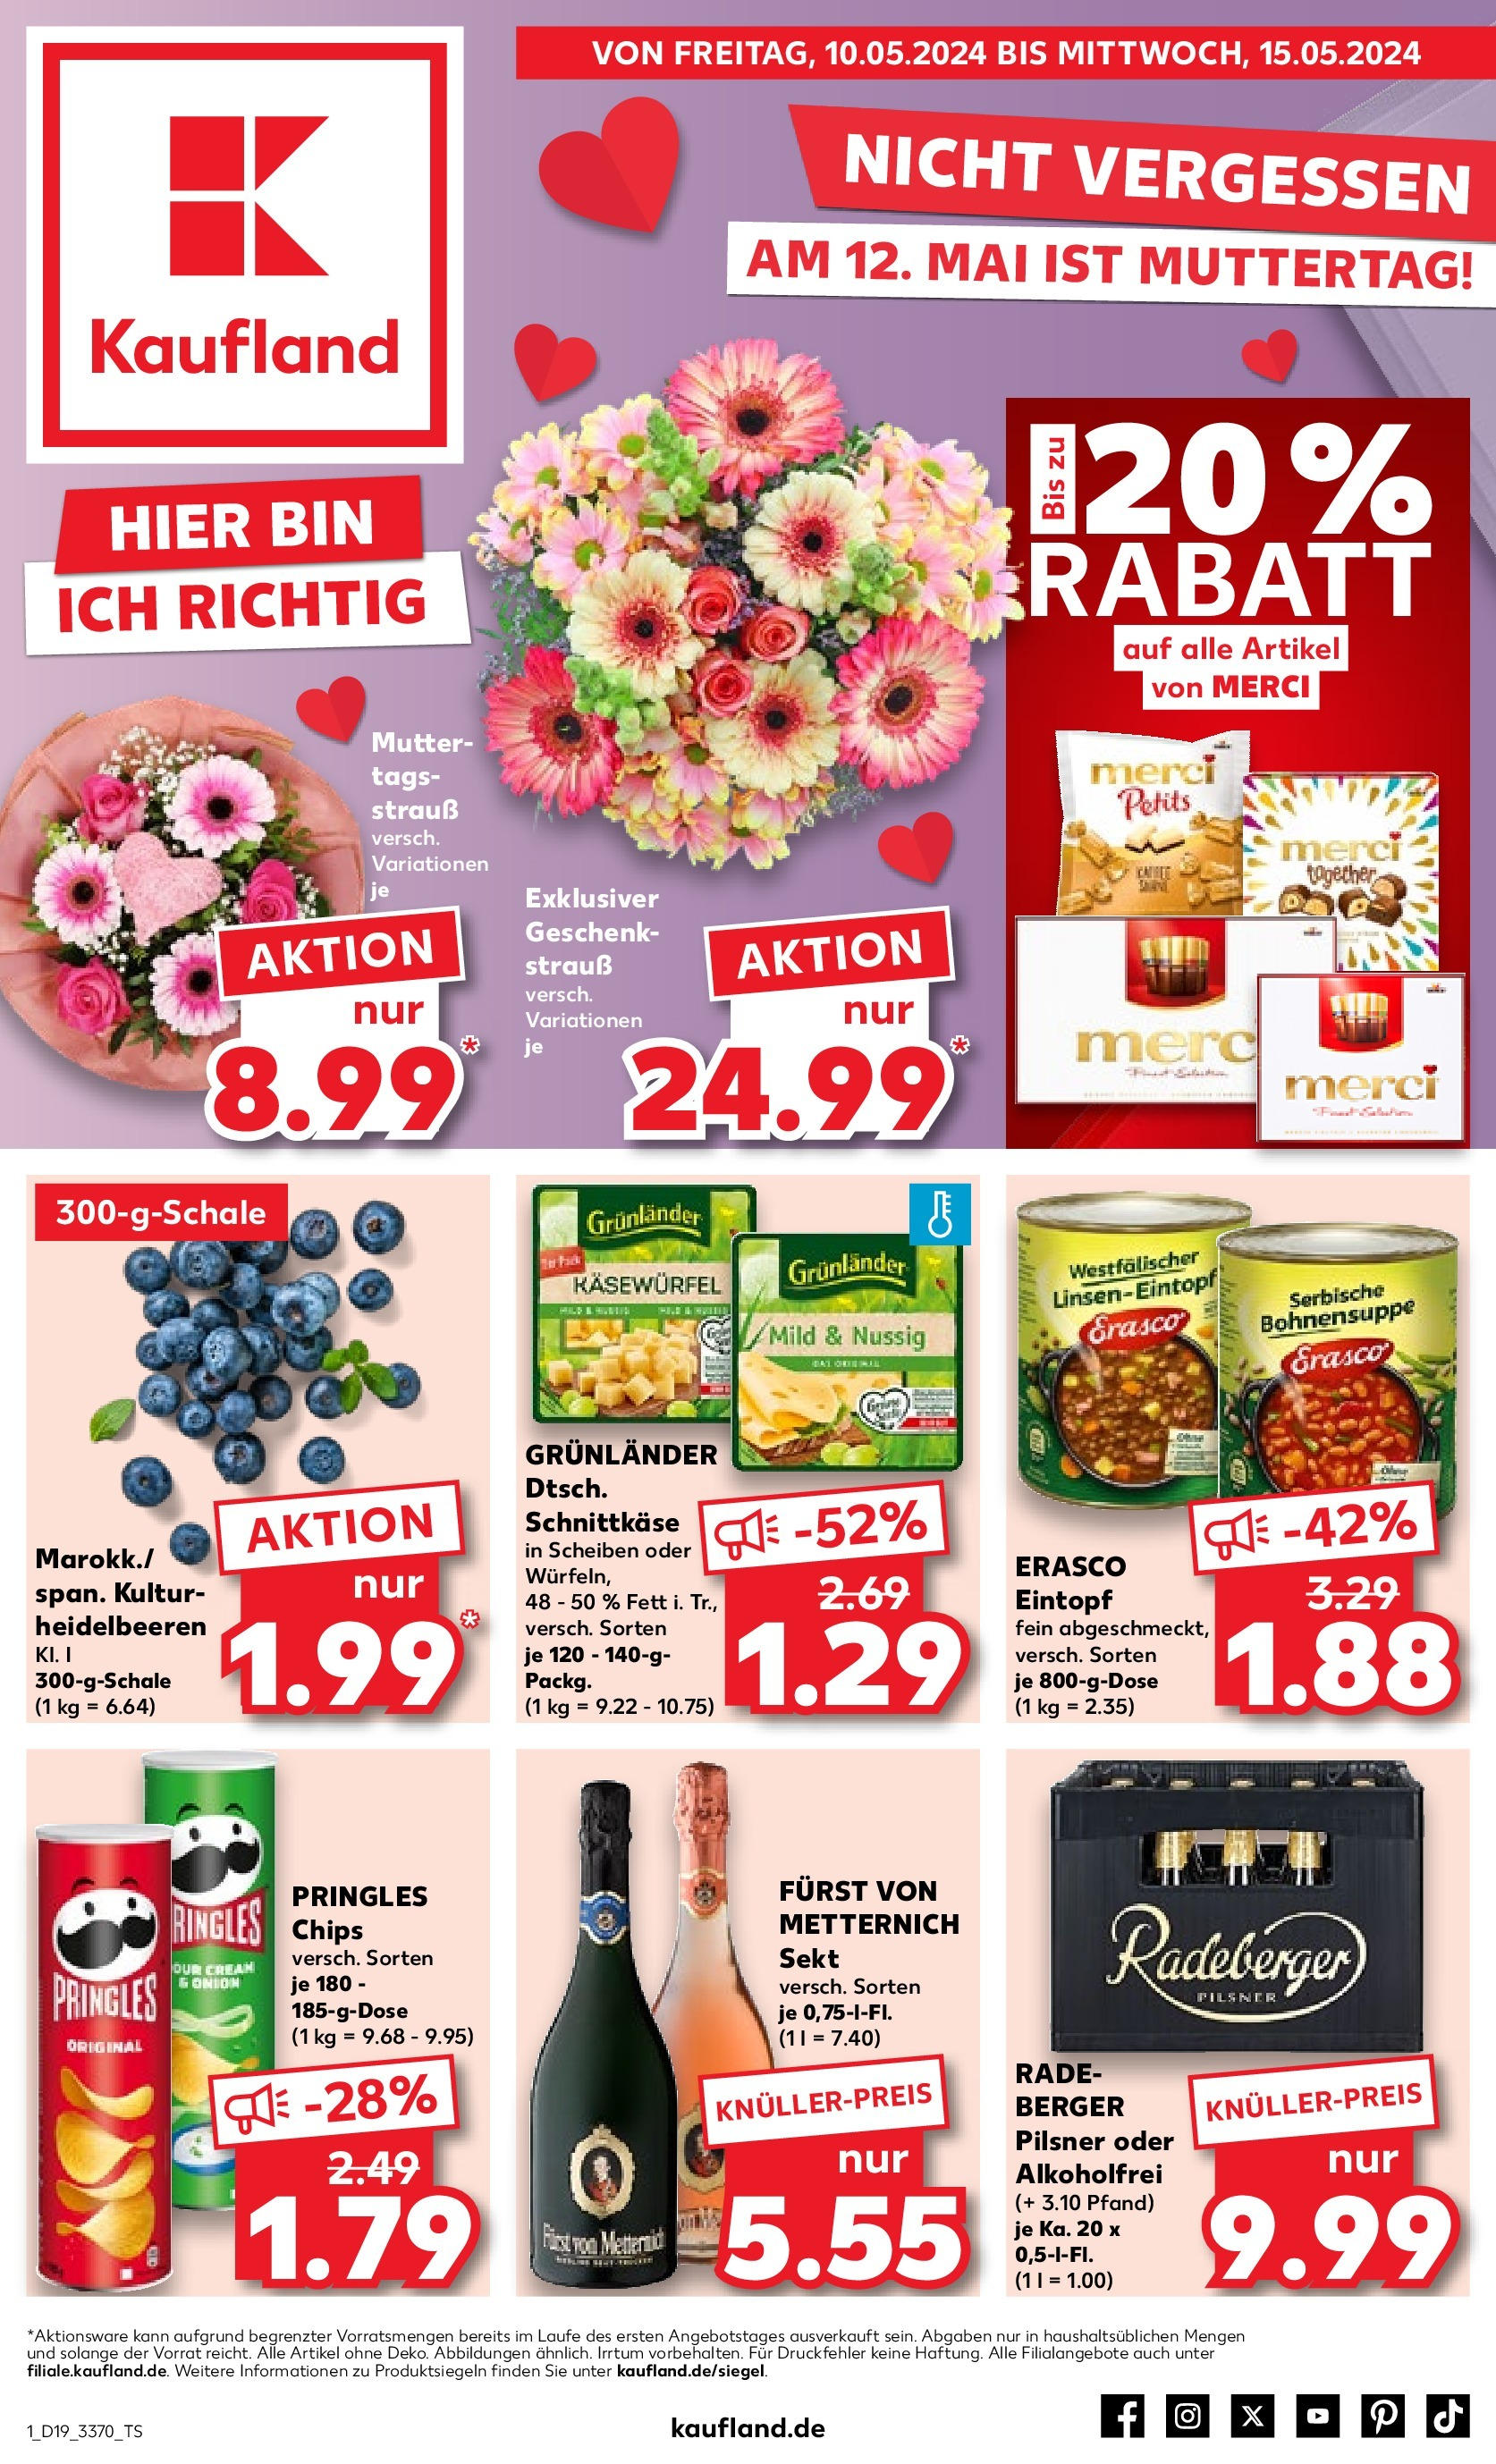 Kaufland - Mecklenburg-Vorpommern (ab 10.05.2024) » Angebote Online zum Blättern | Seite: 1 | Produkte: Sekt, Chips